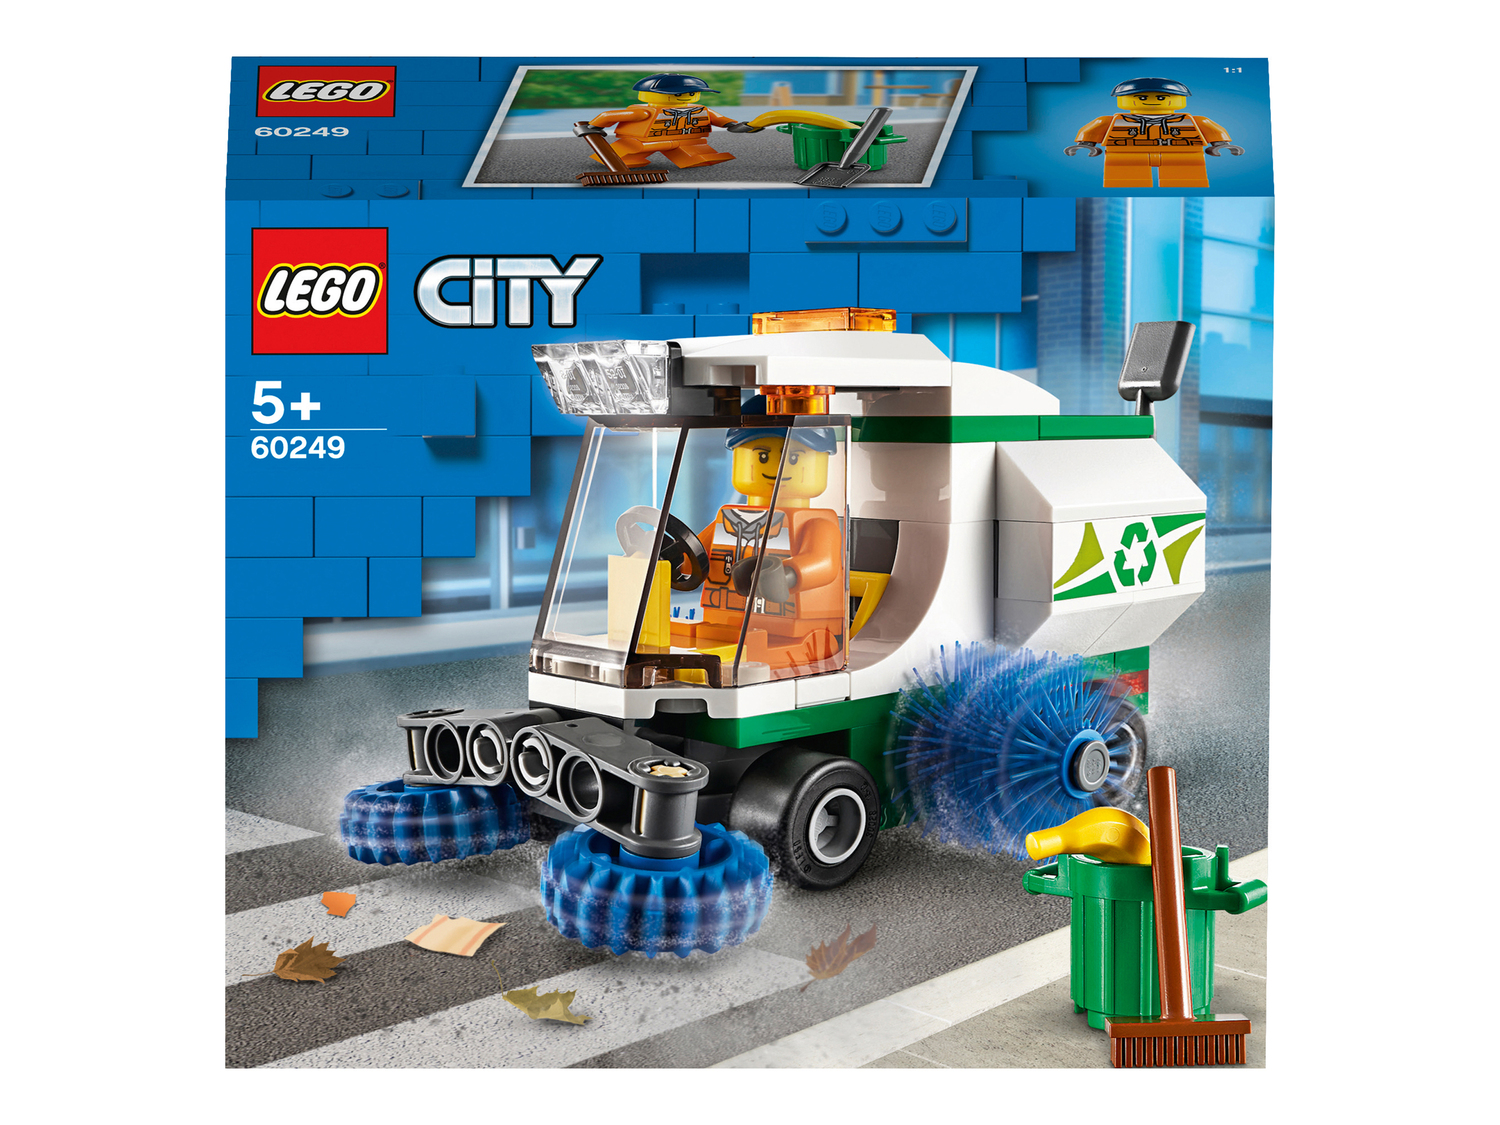 Costruzioni Lego, Classic, Technic, City, Ninjago, Creator, Friends, prezzo 8.99 ...